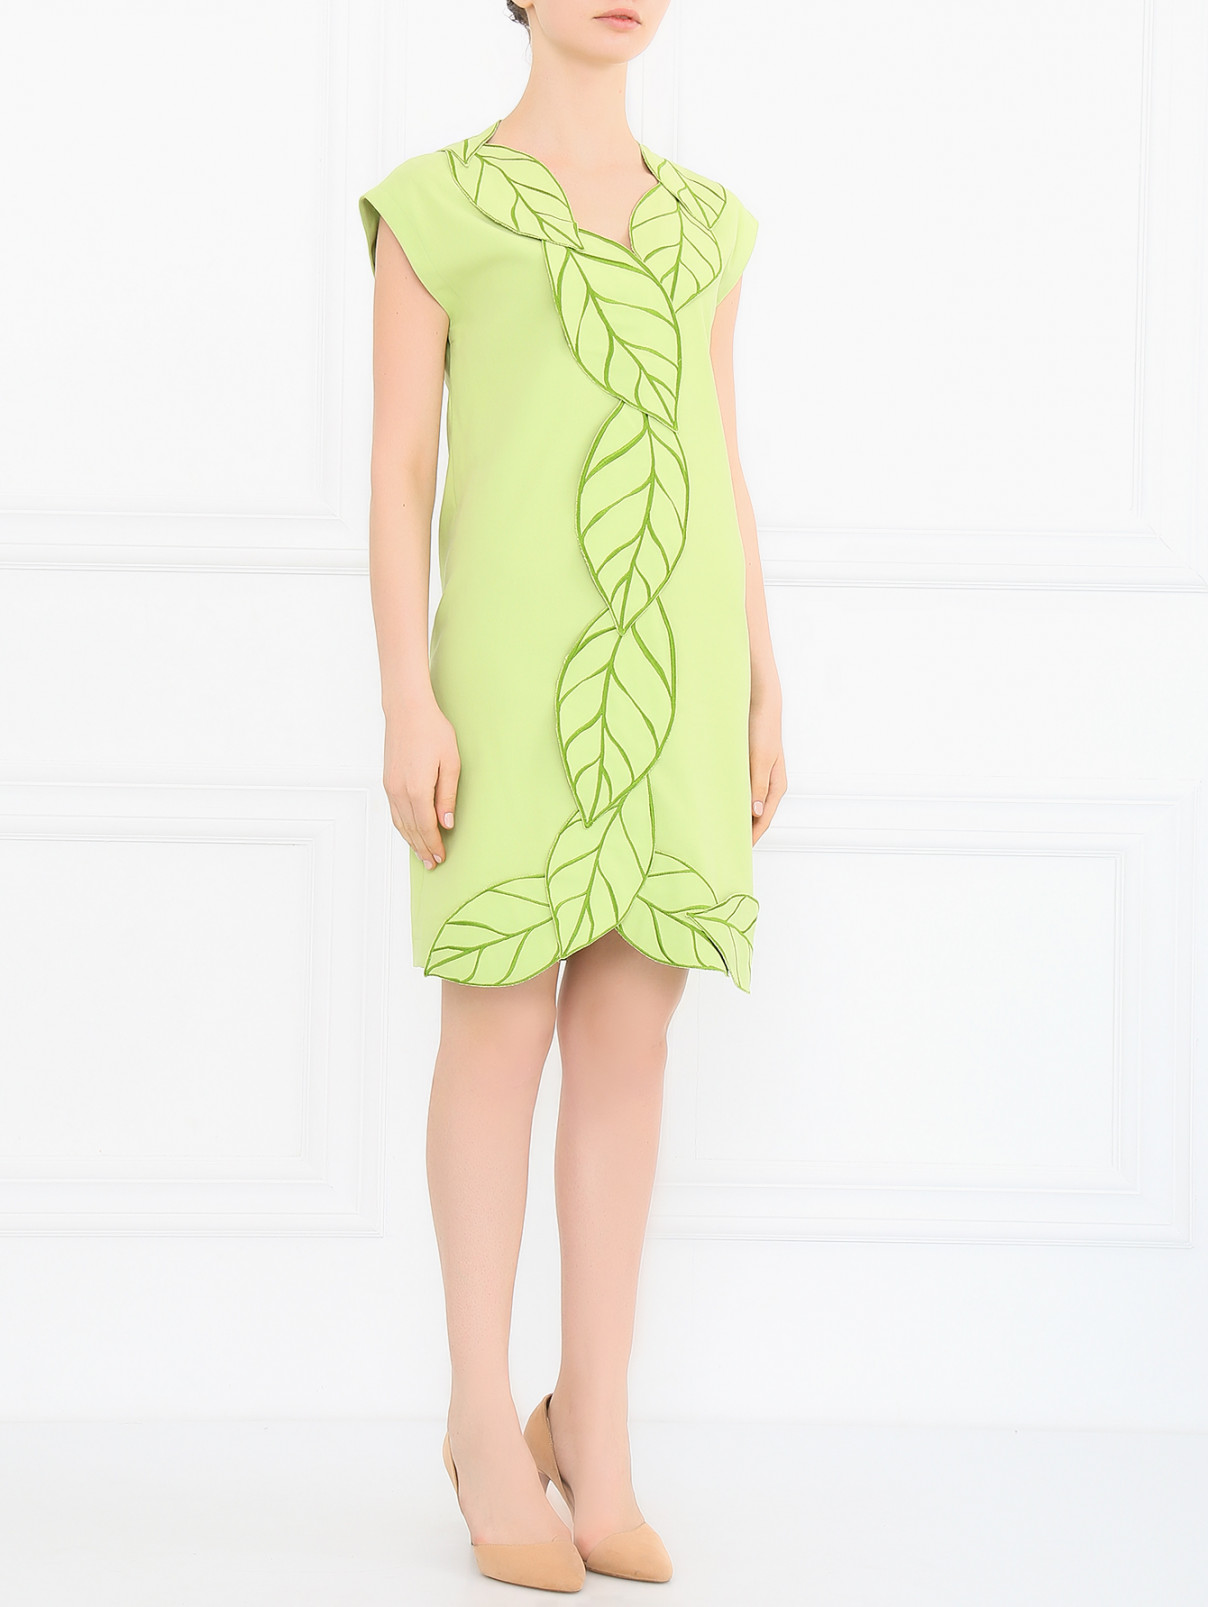 Платье из хлопка с аппликацией Moschino Cheap&Chic  –  Модель Общий вид  – Цвет:  Зеленый